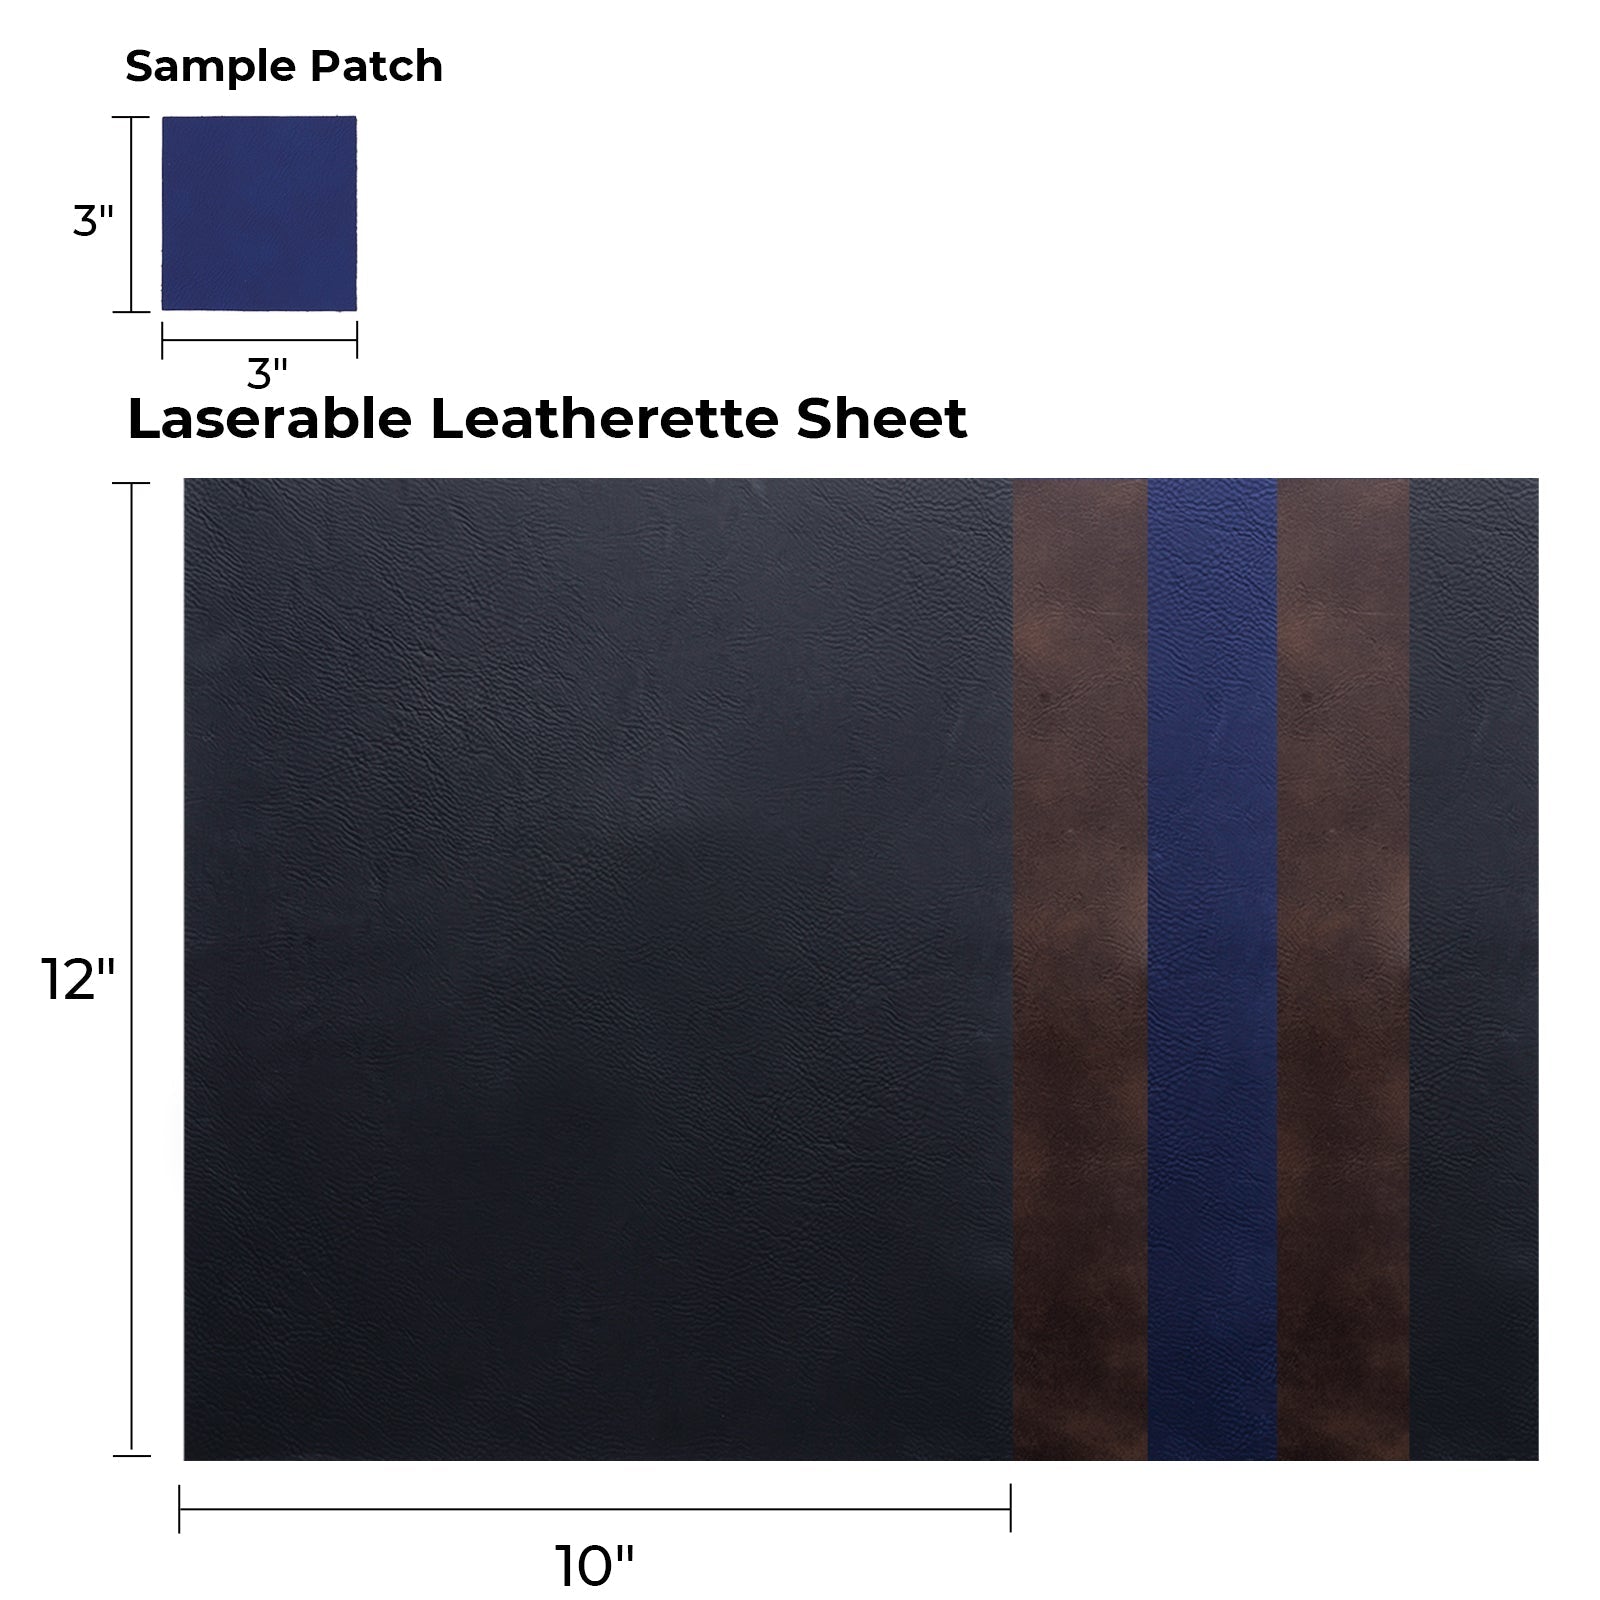 Laserable Leatherette Sheet (5 Stk.)